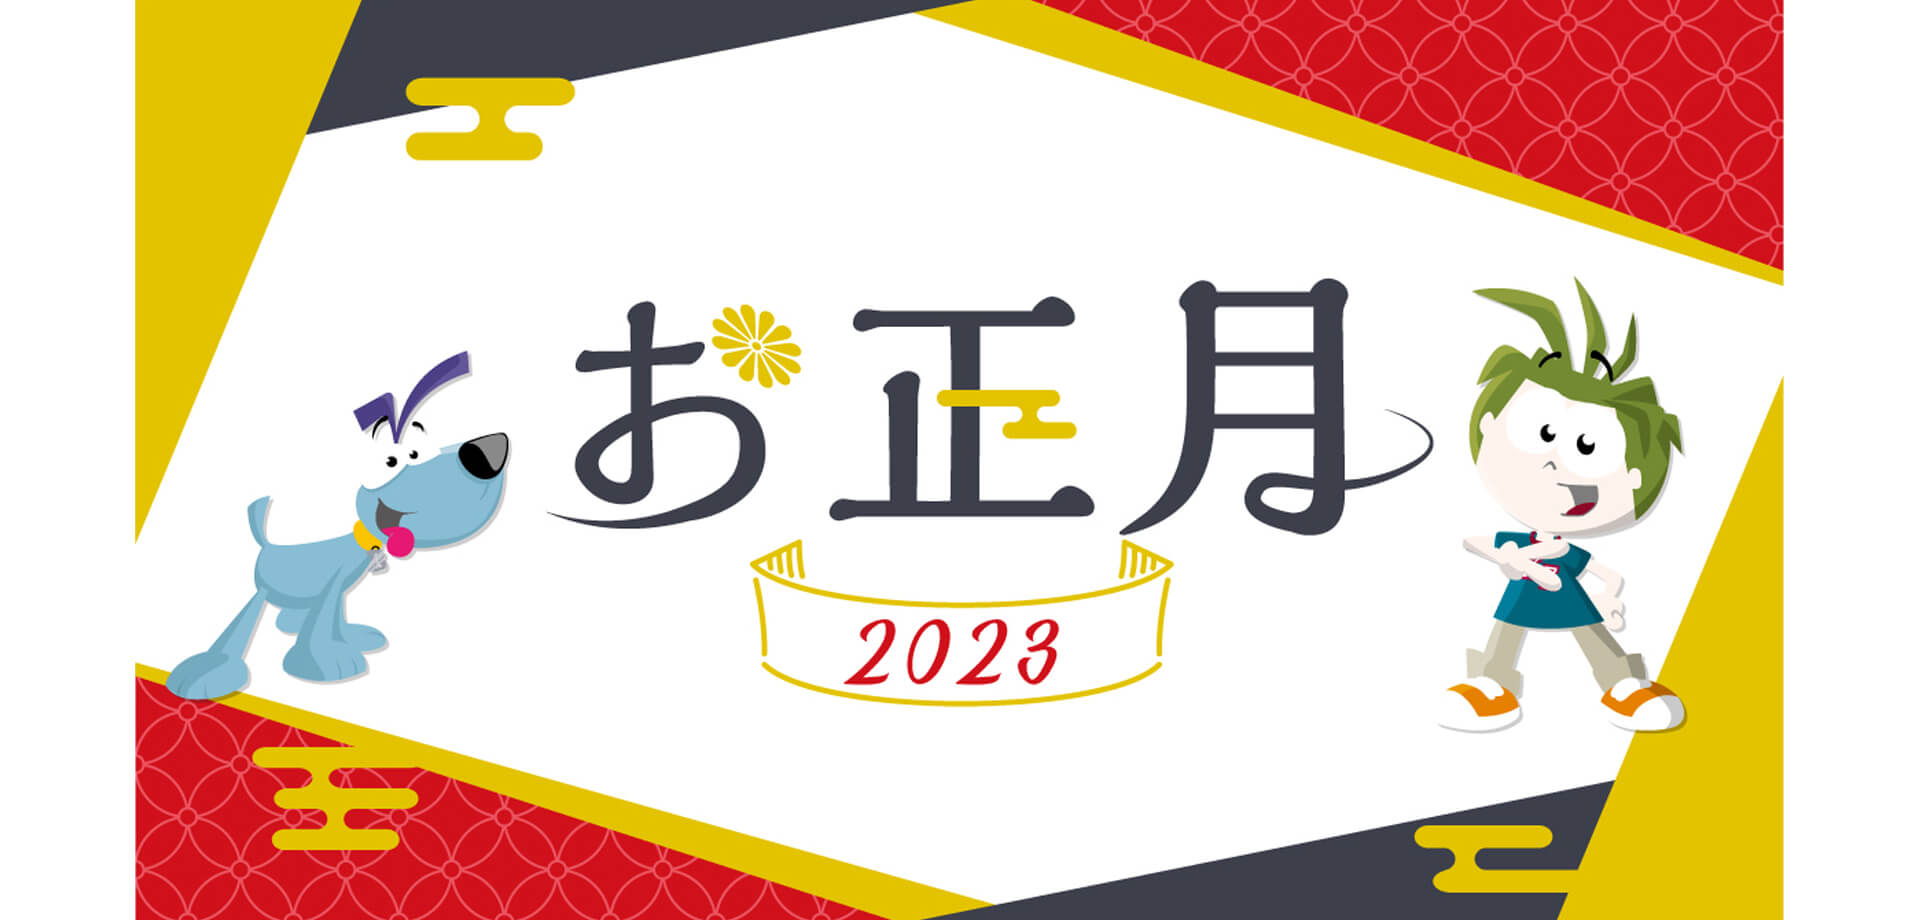 キッザニア東京のお正月2023 「おみくじカンバッジ作り」お年玉